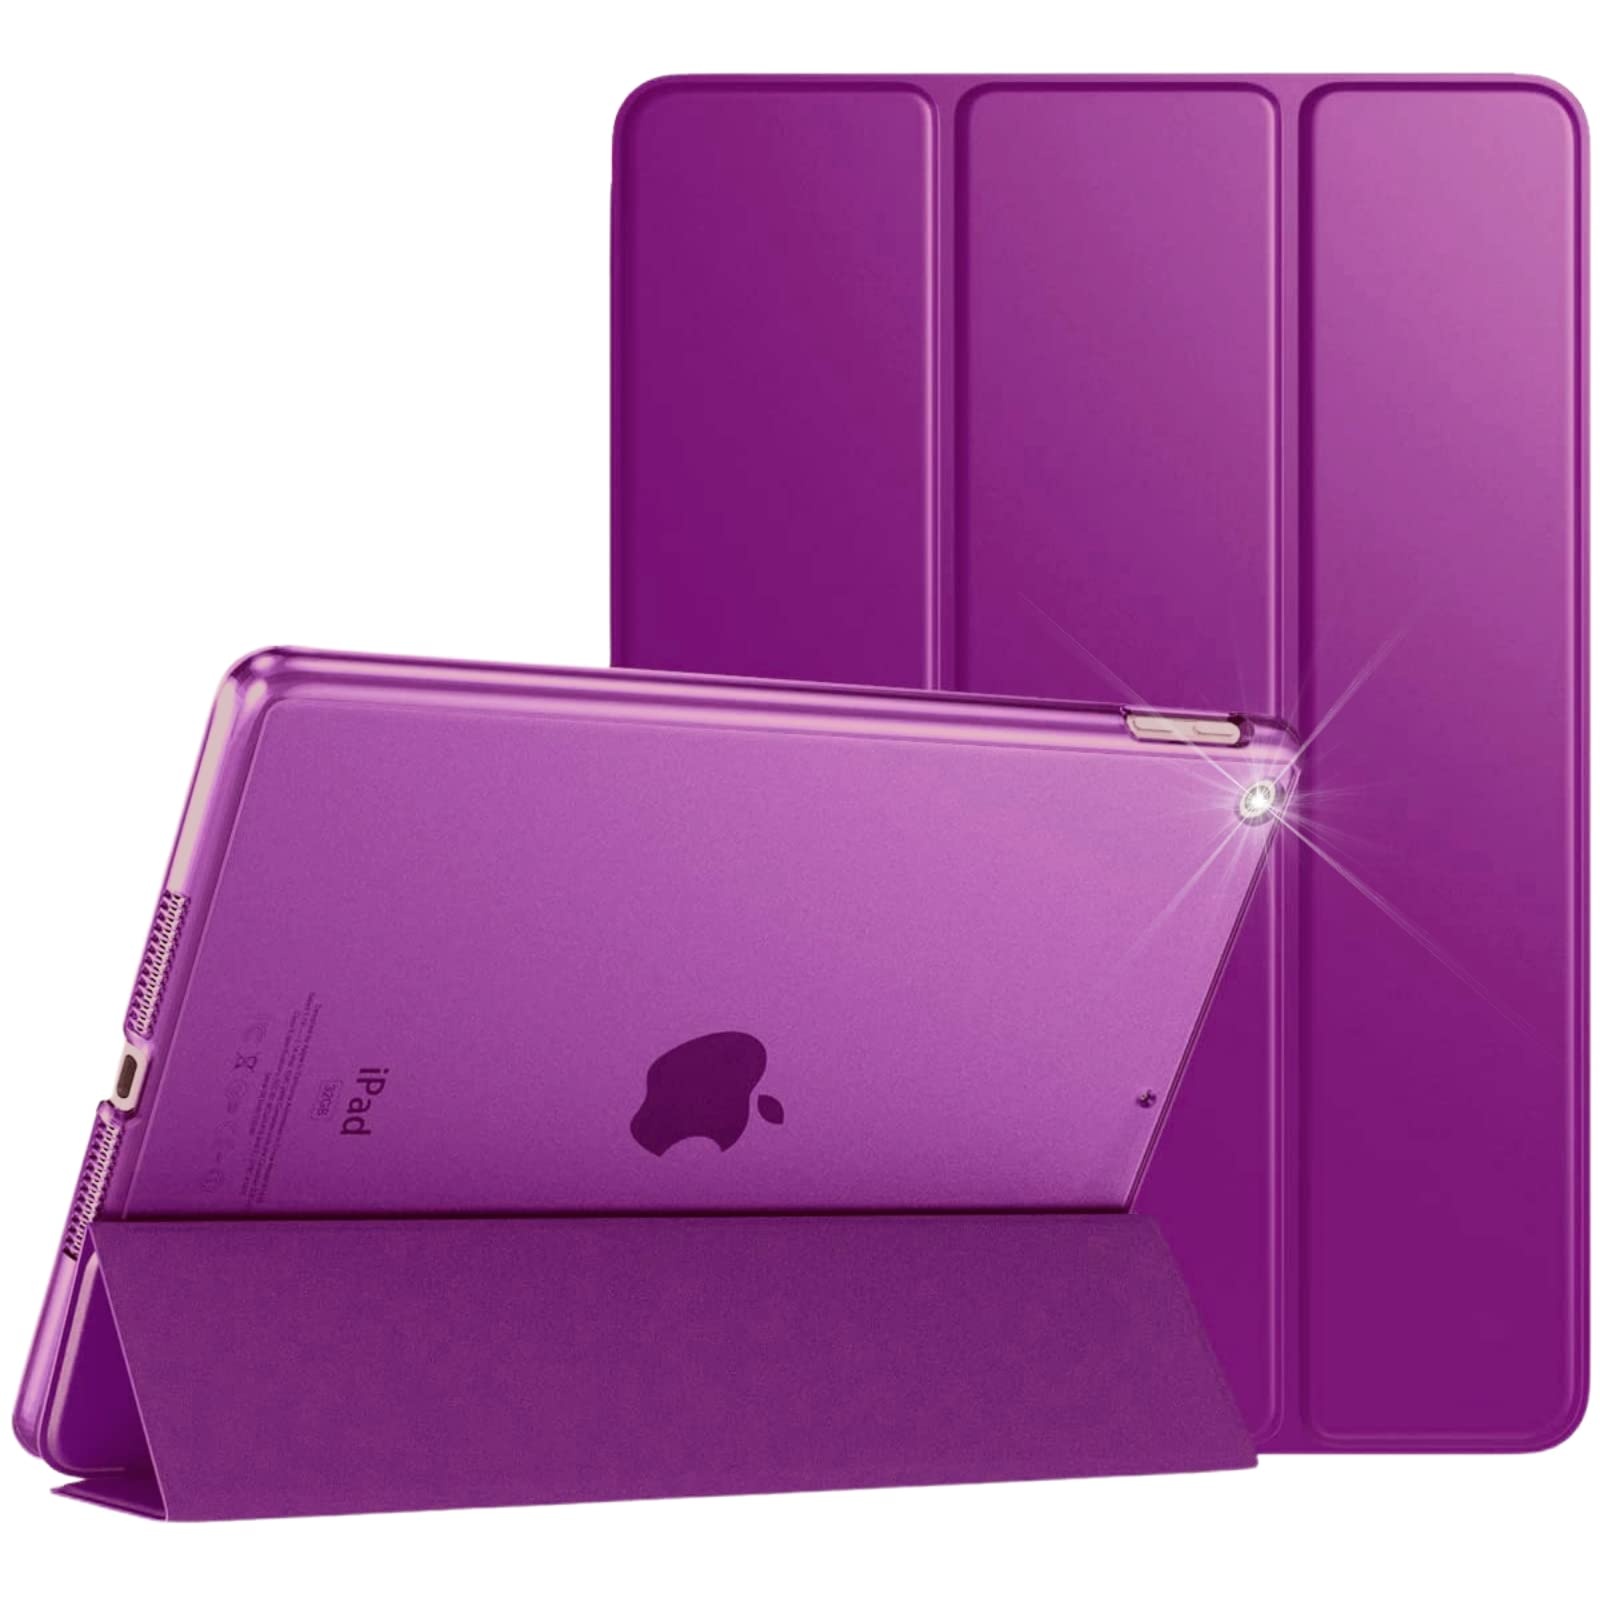 Schutzhülle für Apple iPad Air 2, magnetische Lederhülle, automatische Wake/Sleep-Funktion, passend für Modell-Nr. A1566 / A1567, Violett